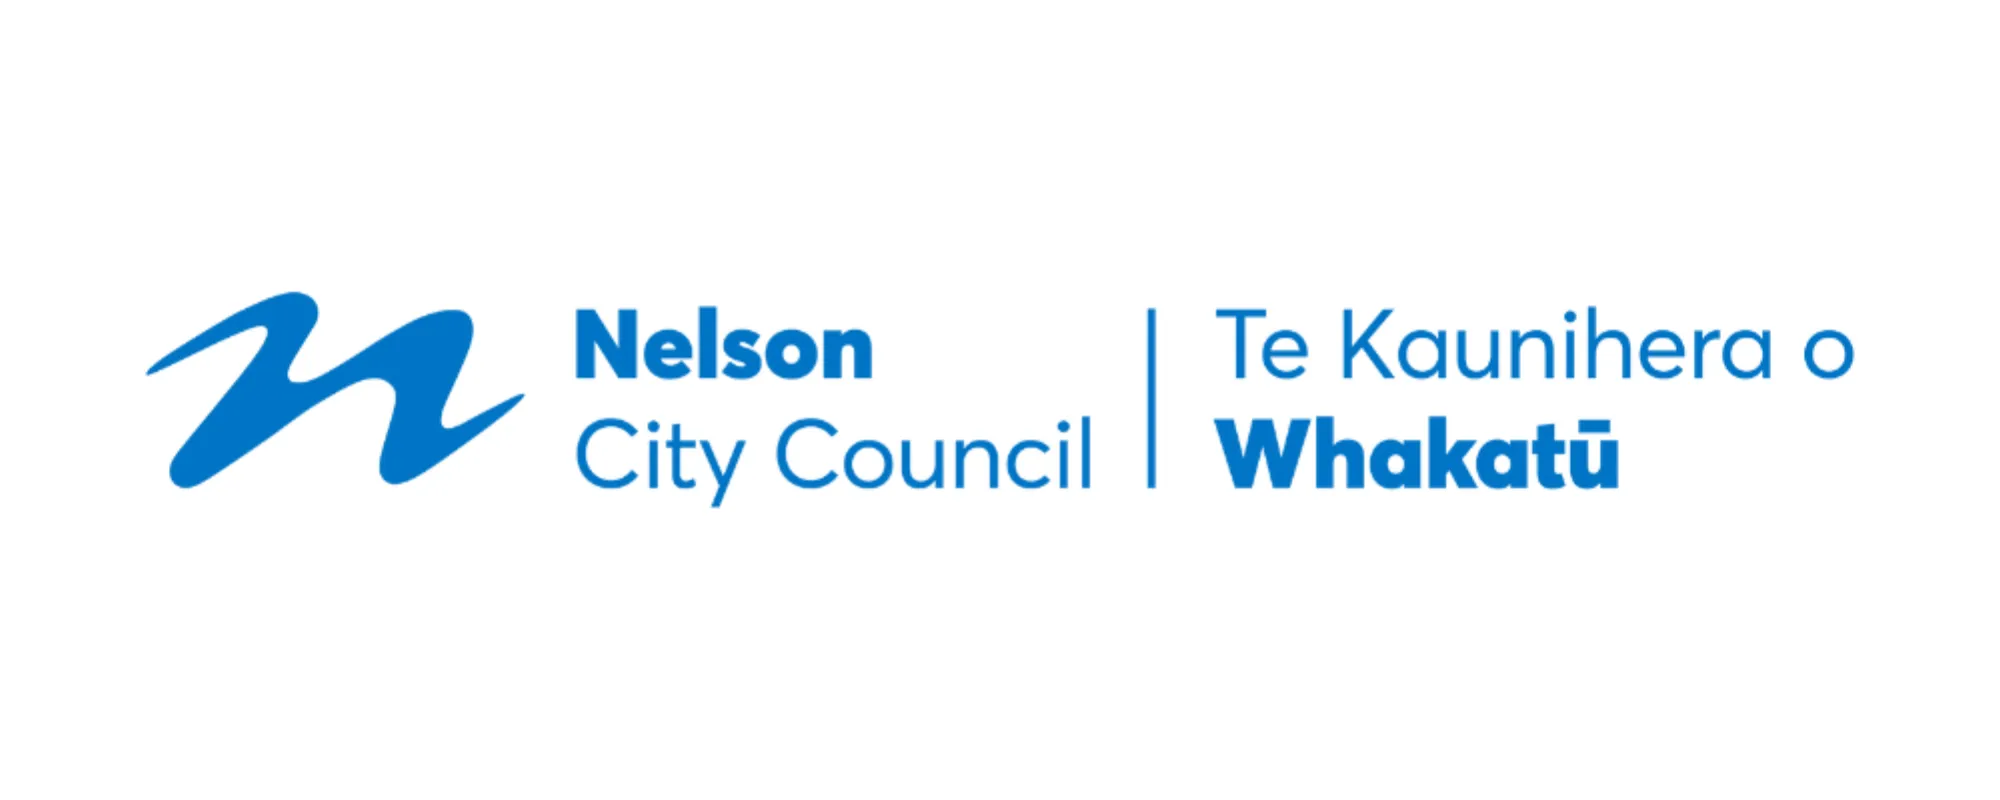 NCC Nelson City Council Sponsor